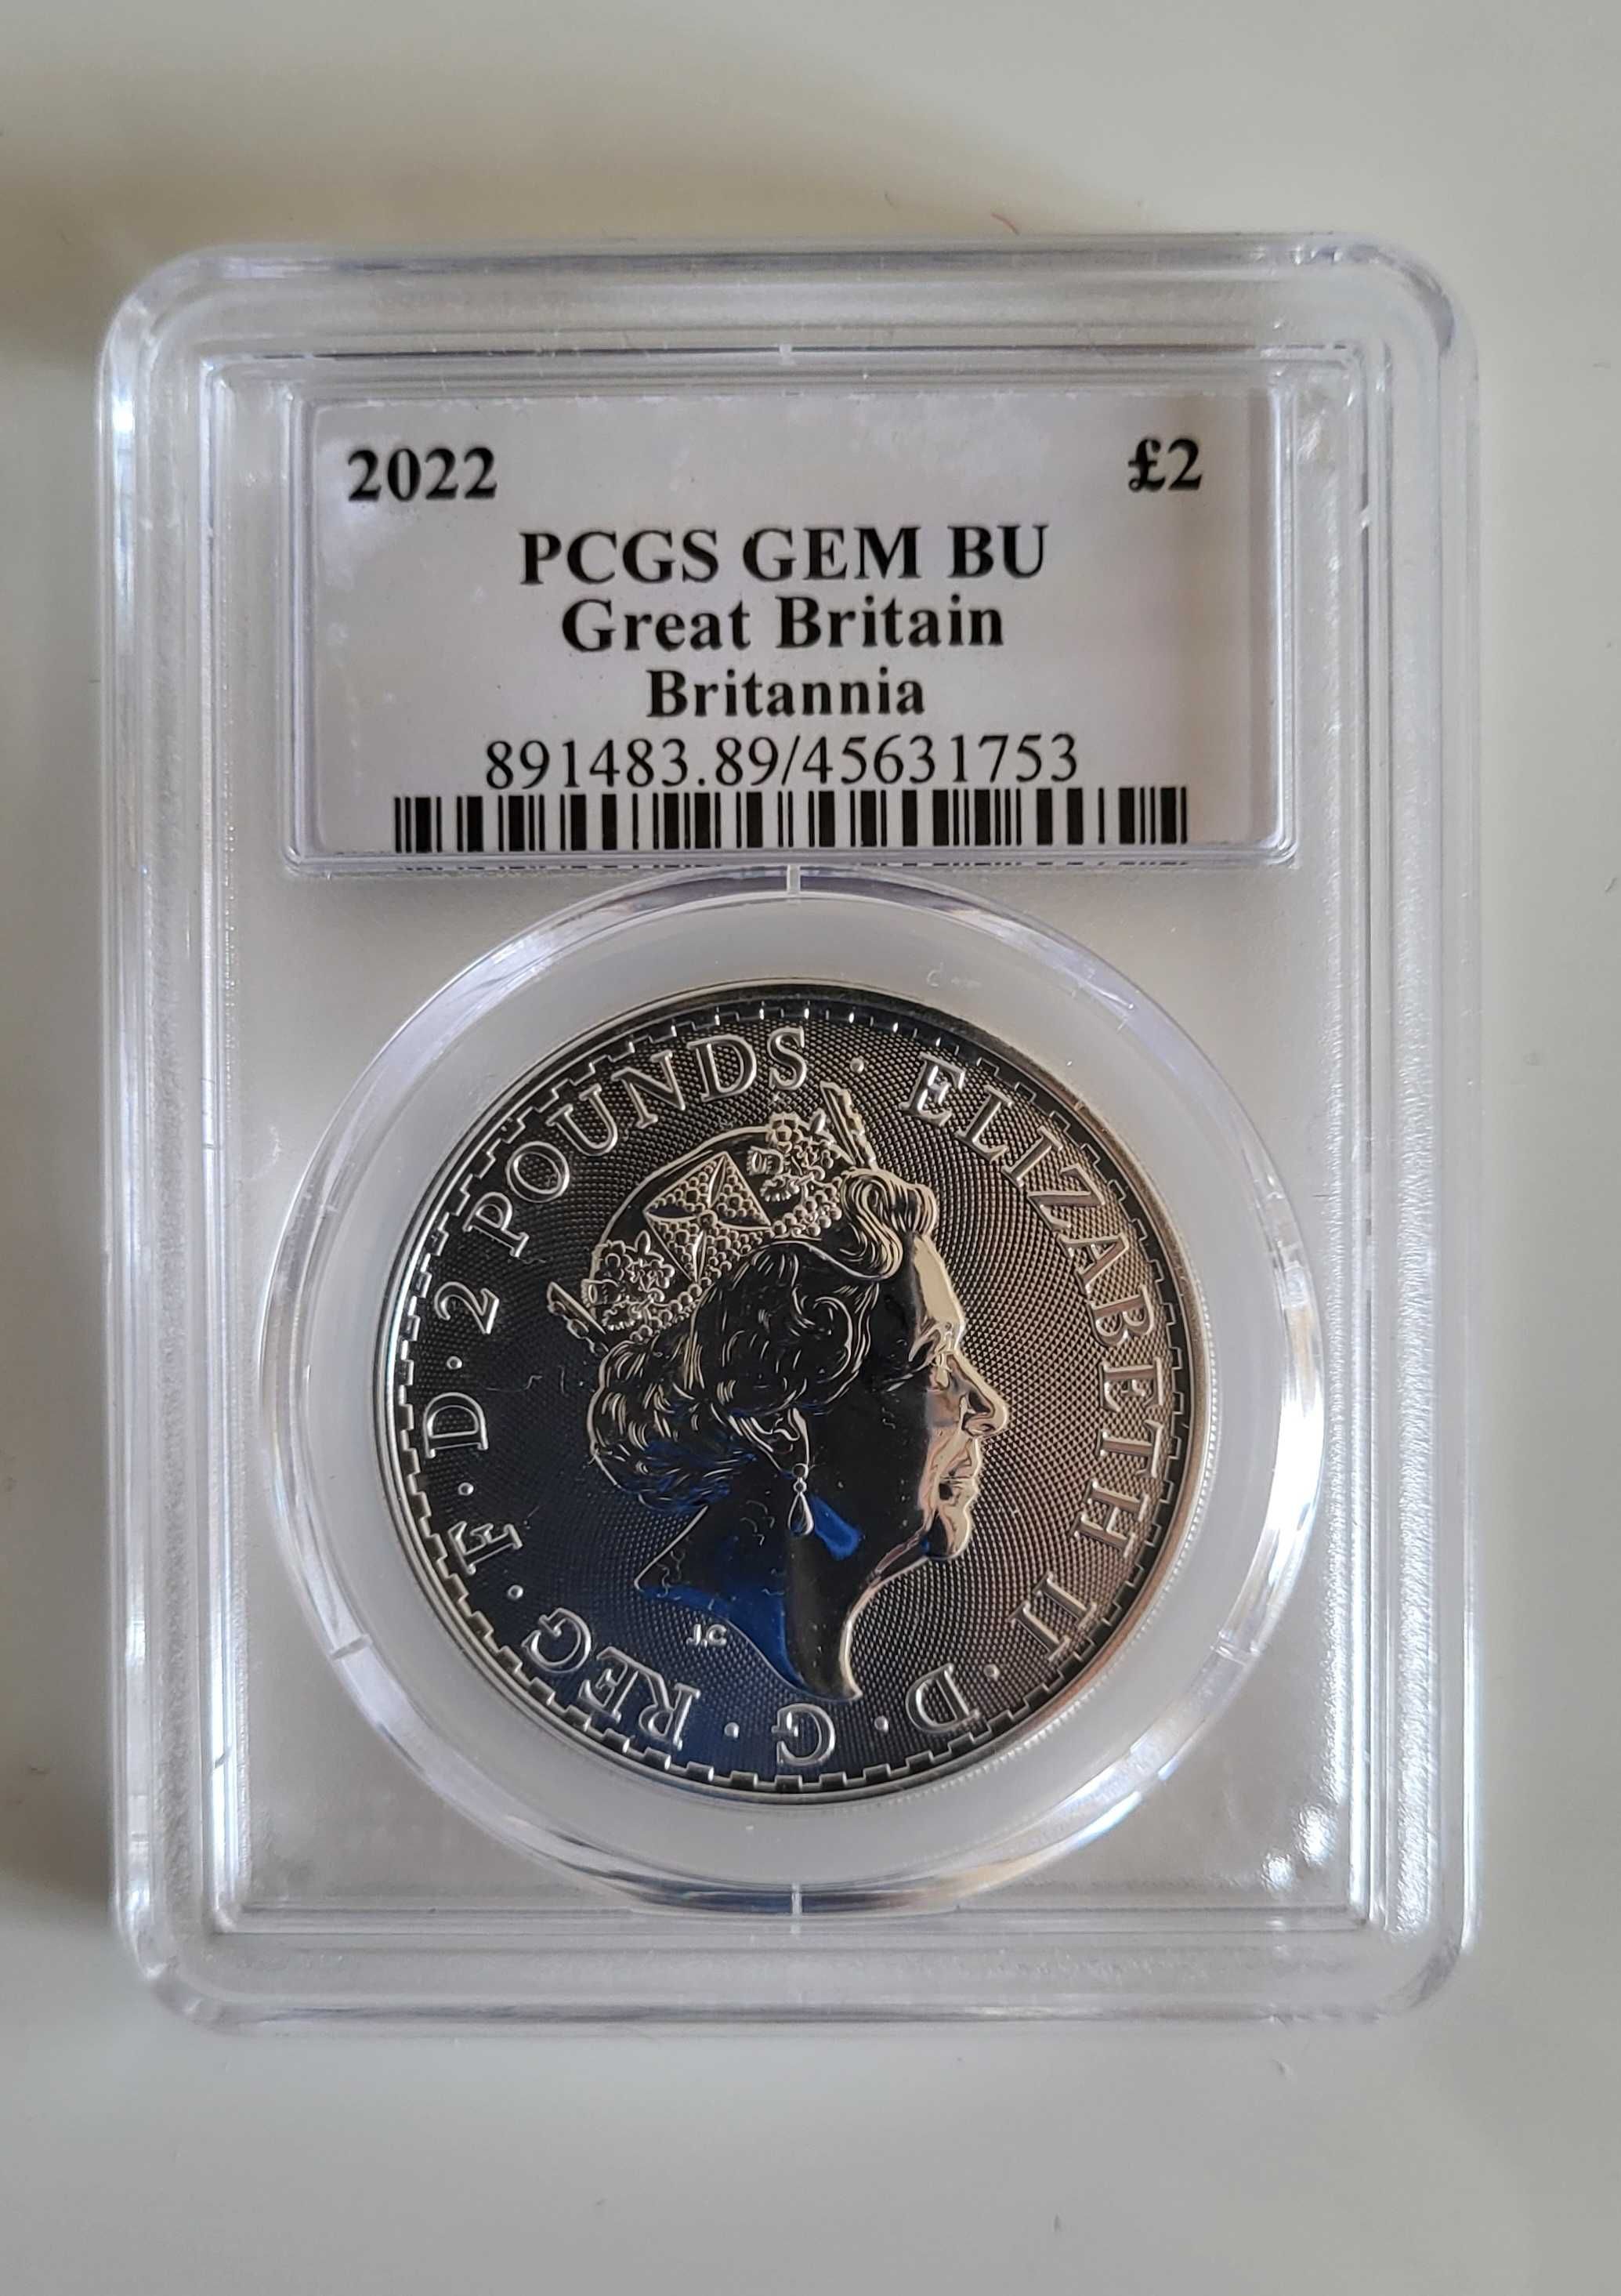 Британія ювілейна срібна монета на честь Елизавети 2 PCGS 1 унція